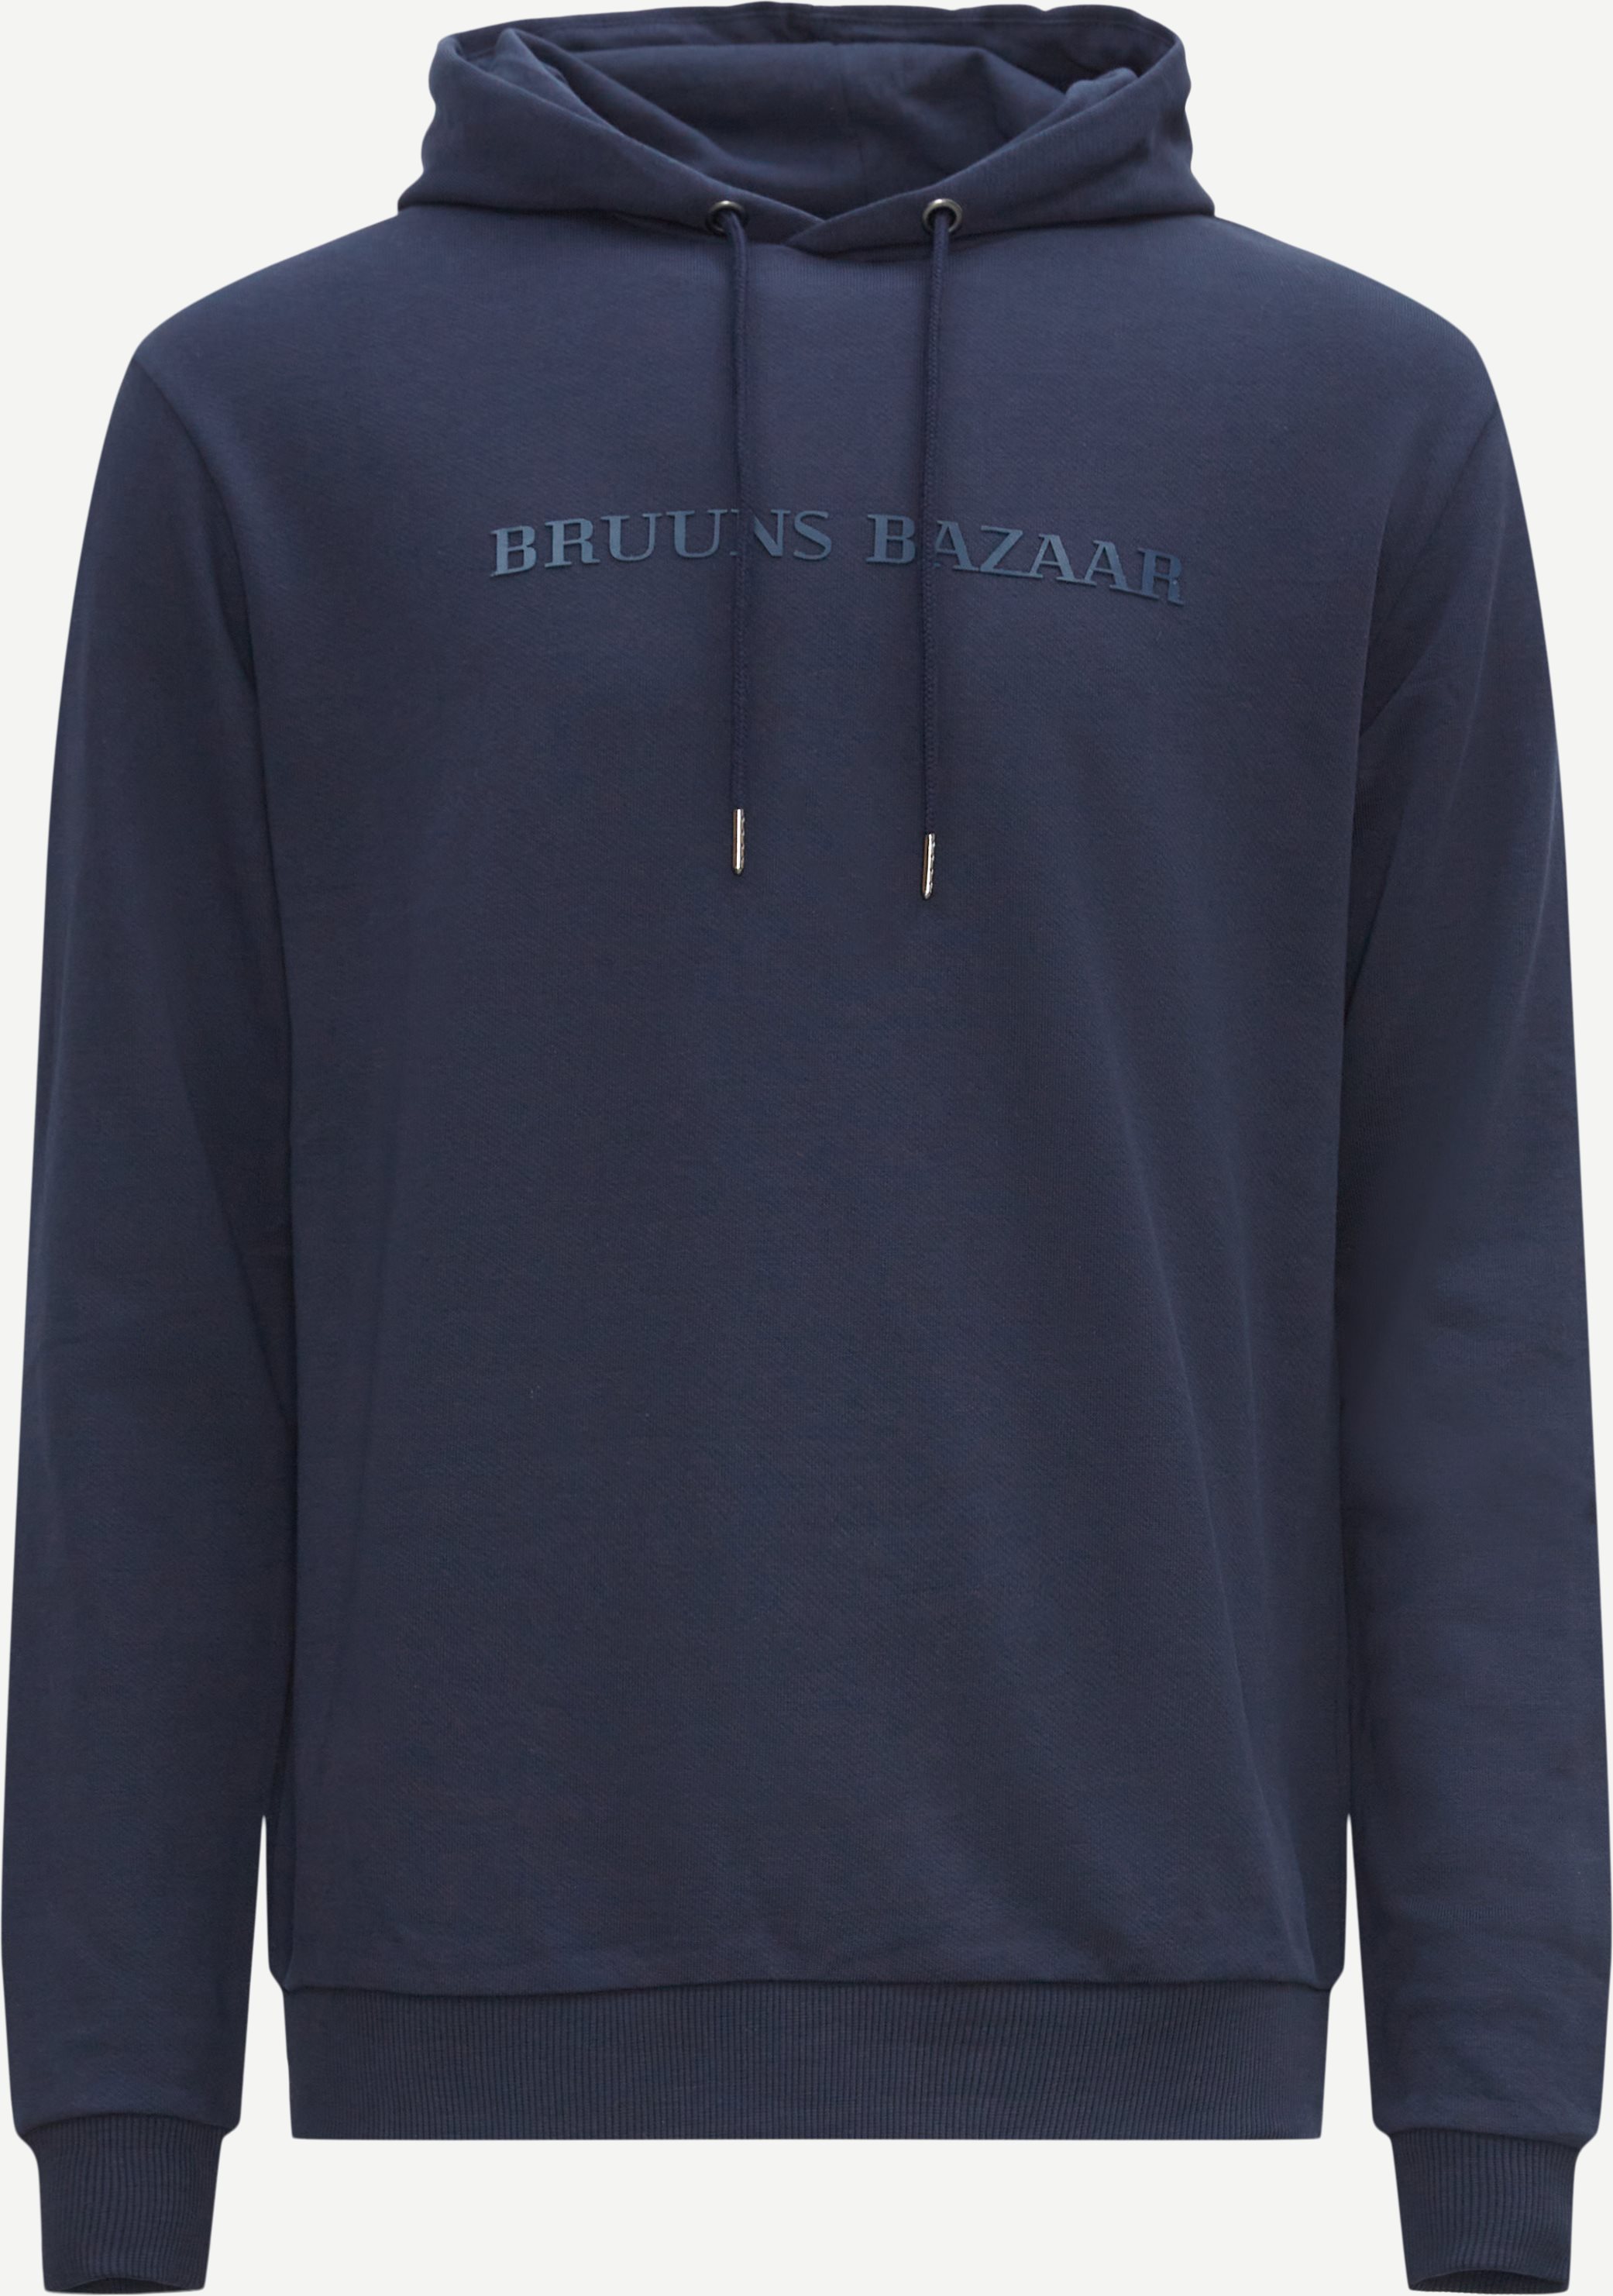 Bruuns Bazaar Sweatshirts BERTIL HOODIE 1278 Blå